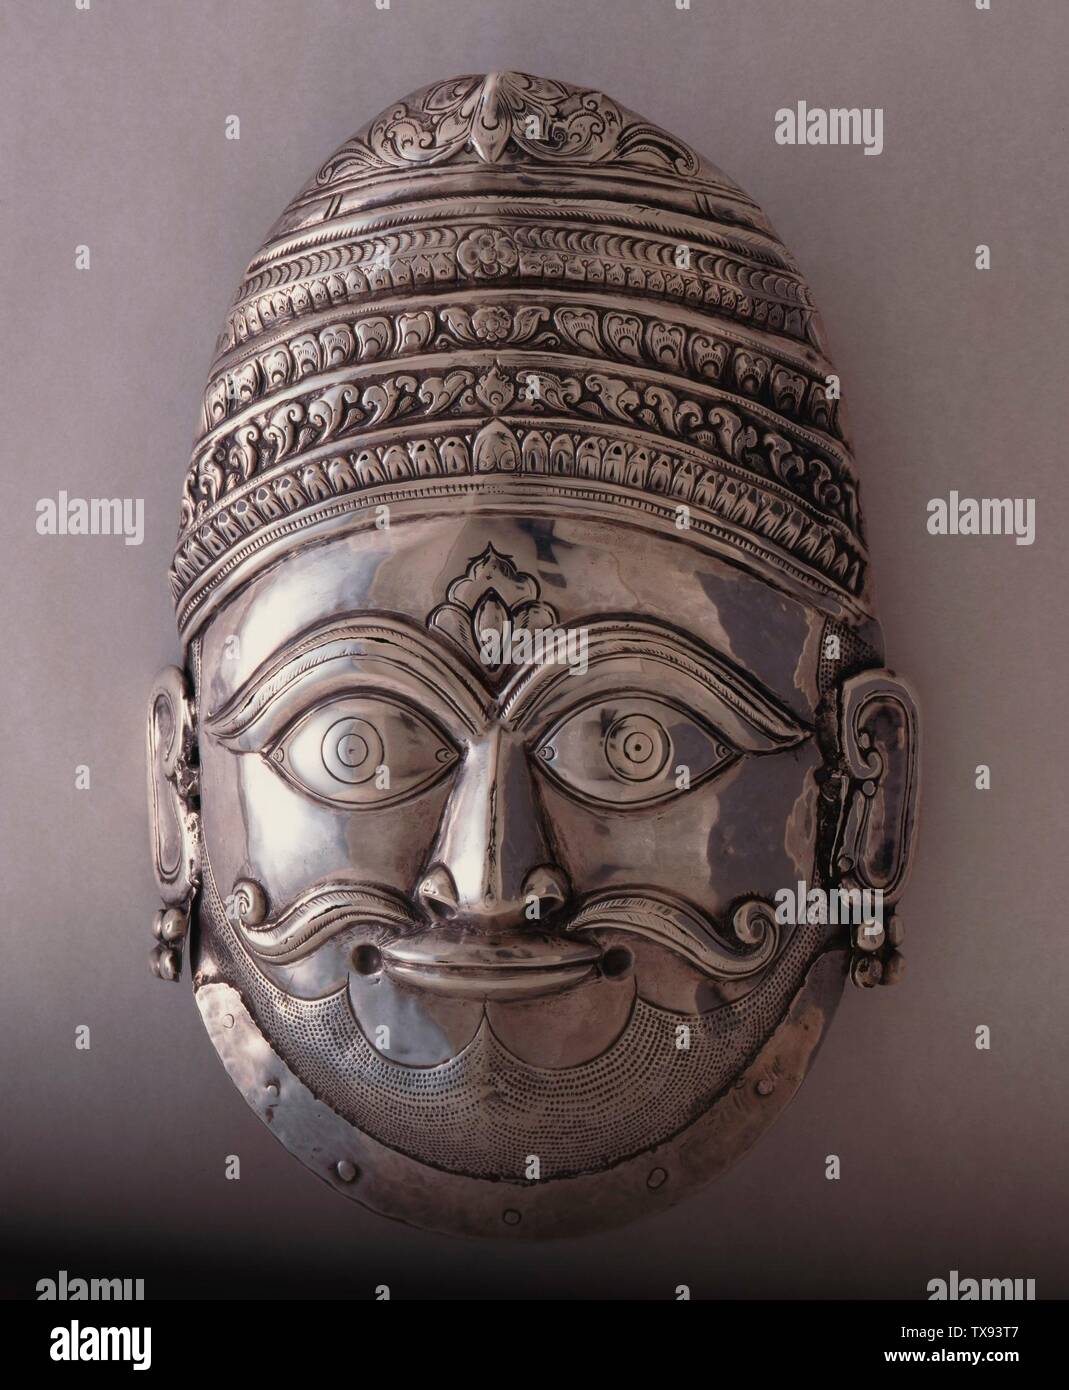 Máscara de Shiva (imagen 2 de 3); India, Maharashtra o Karnataka, joyería del siglo XVIII y Adornos; máscaras Repoussé plata 9 7/8 x 6 7/8 x 2 1/2 pulg. (25.08 x 17.46 x 6.35 cm) Comprado con fondos proporcionados por Harry and Yvonne Lenart (AC1995.16.1) Arte del Sur y del Sudeste Asiático; fecha del siglo XVIII QS:P571,+1750-00-00T00:00:00Z/7; Foto de stock